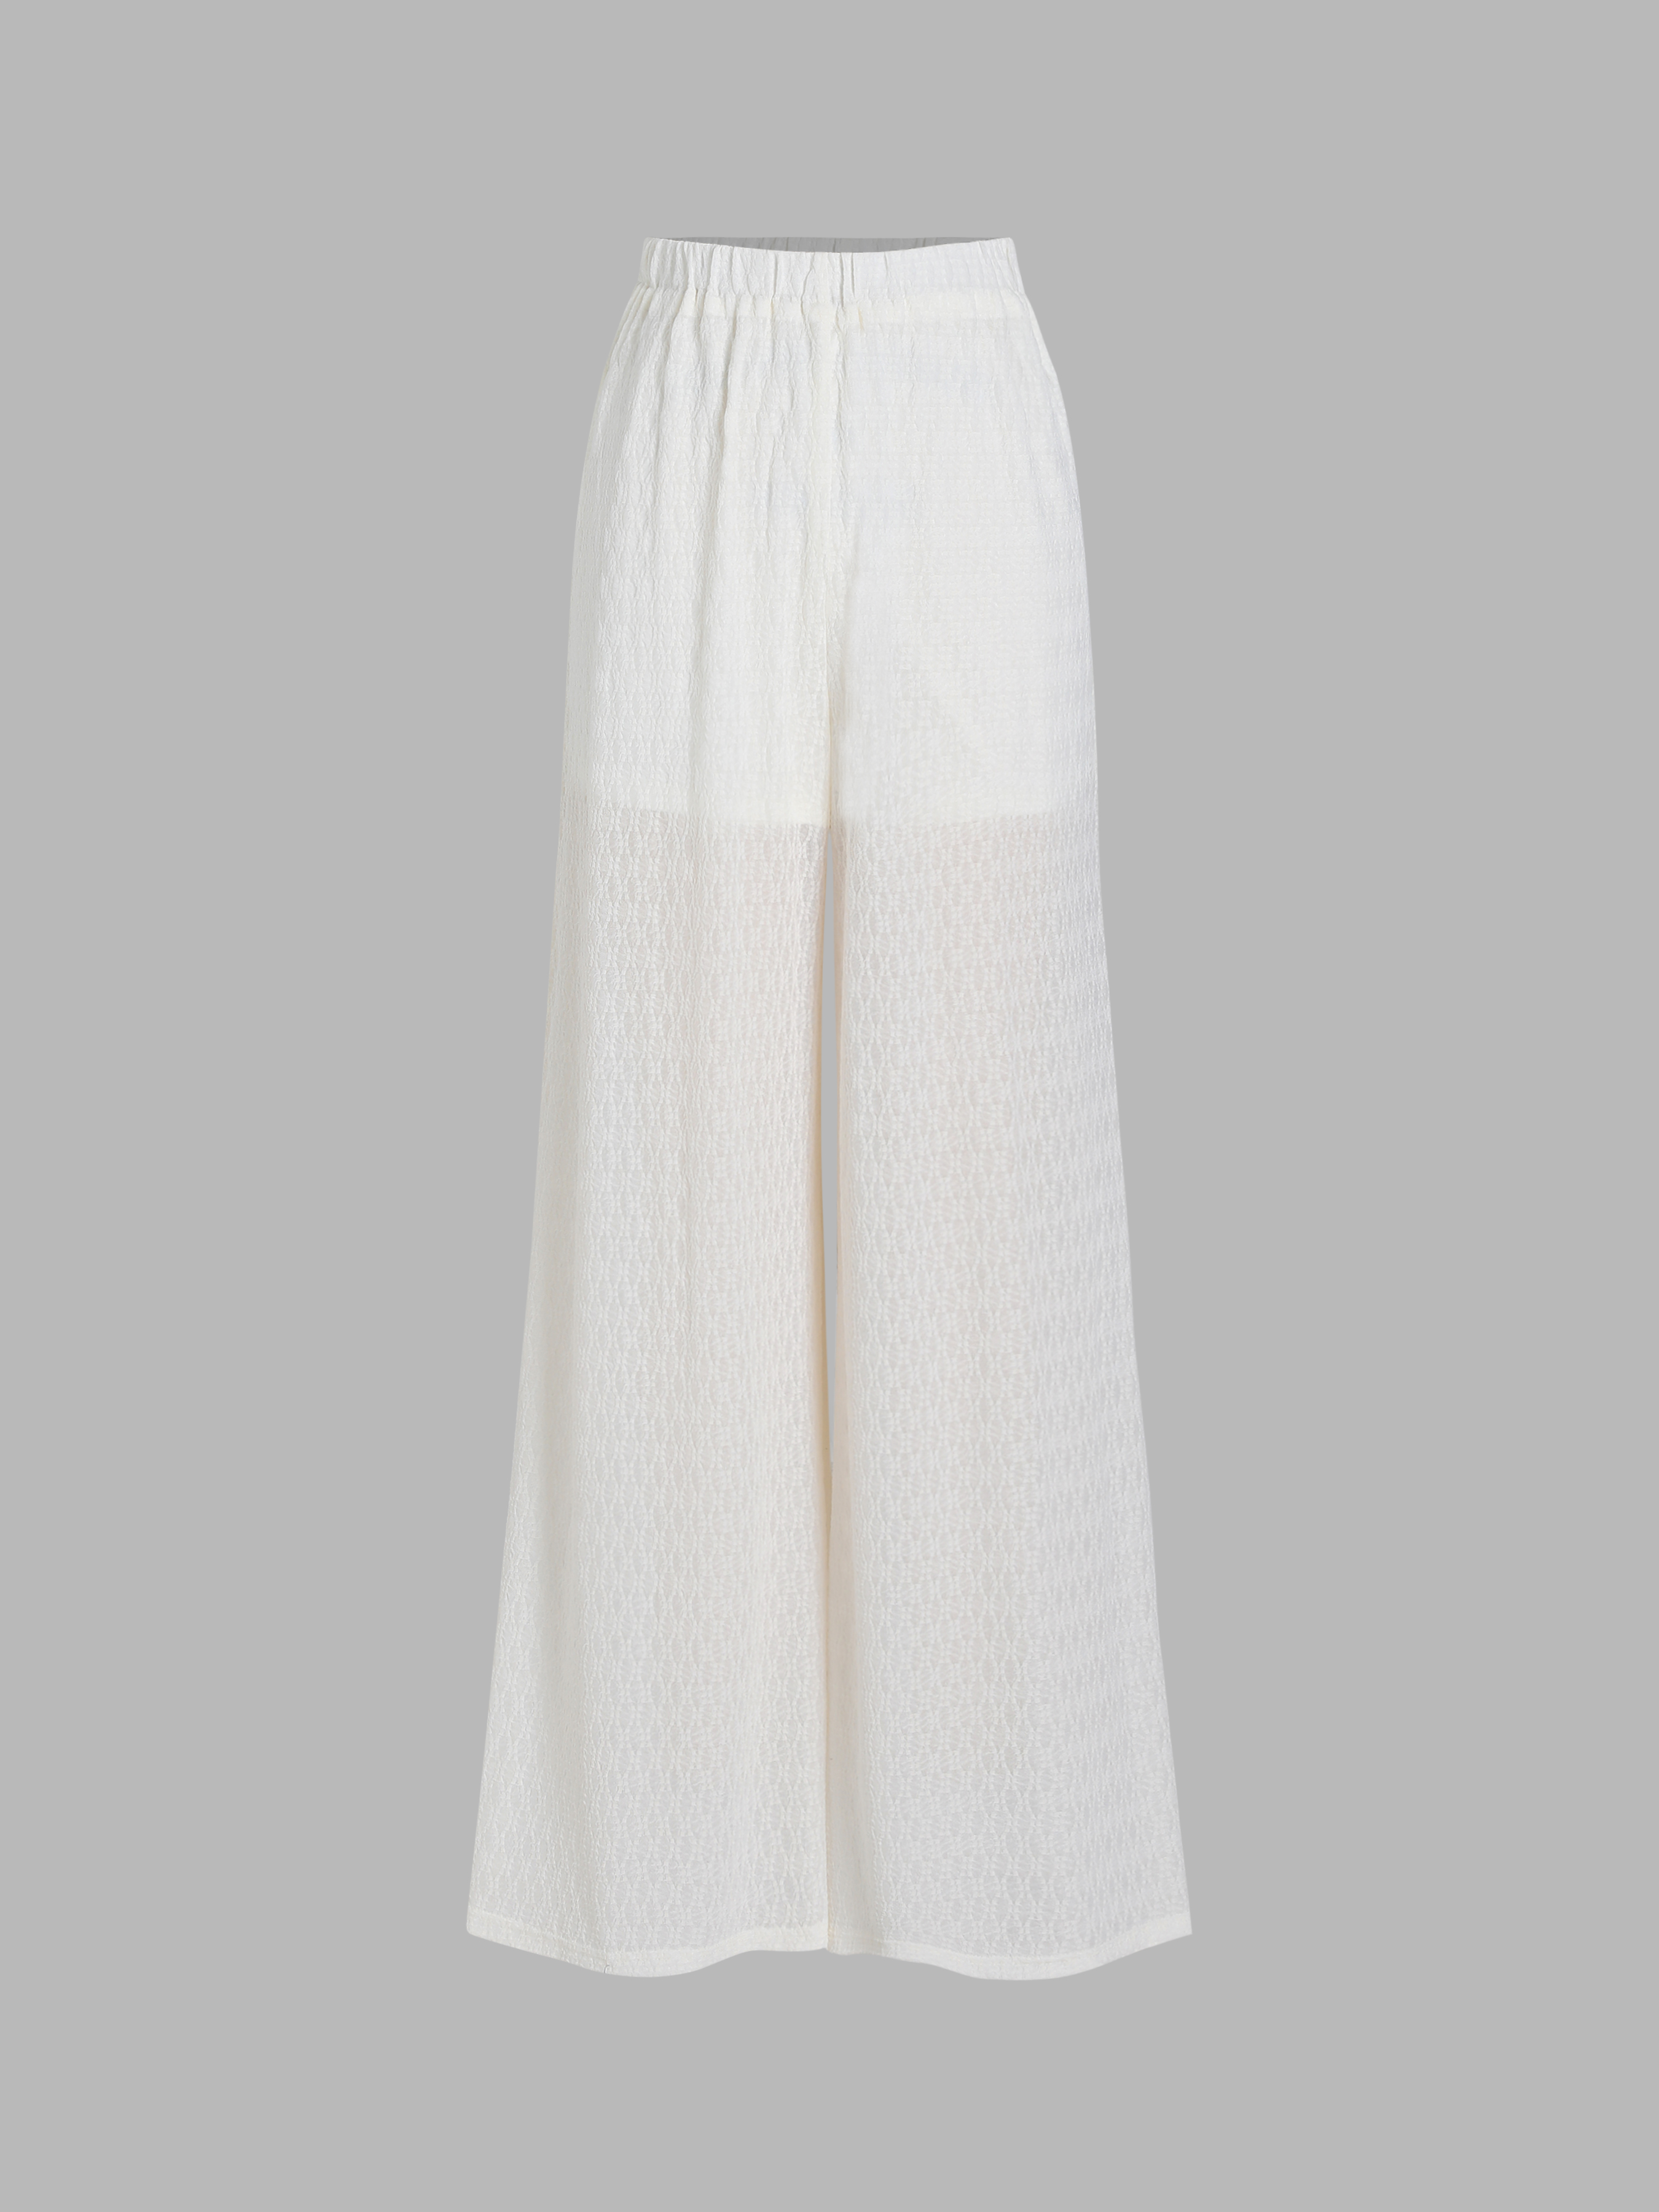 Buy Wahe-NOOR Women's White Chikankari Rayon Palazzo Online at Best Price |  Distacart